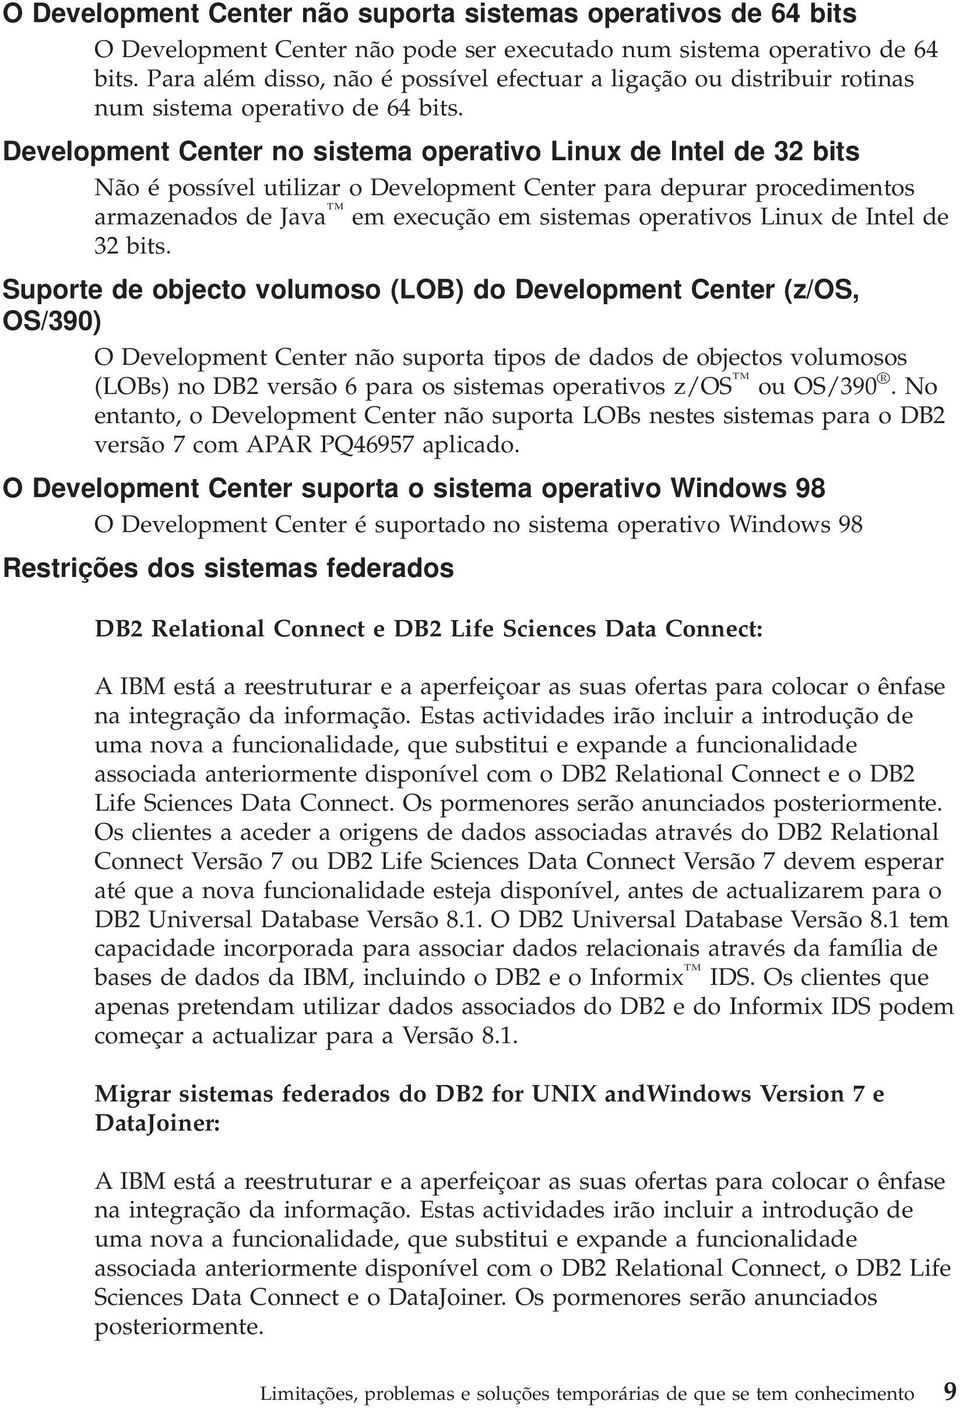 Development Center no sistema operativo Linux de Intel de 32 bits Não é possível utilizar o Development Center para depurar procedimentos armazenados de Java em execução em sistemas operativos Linux